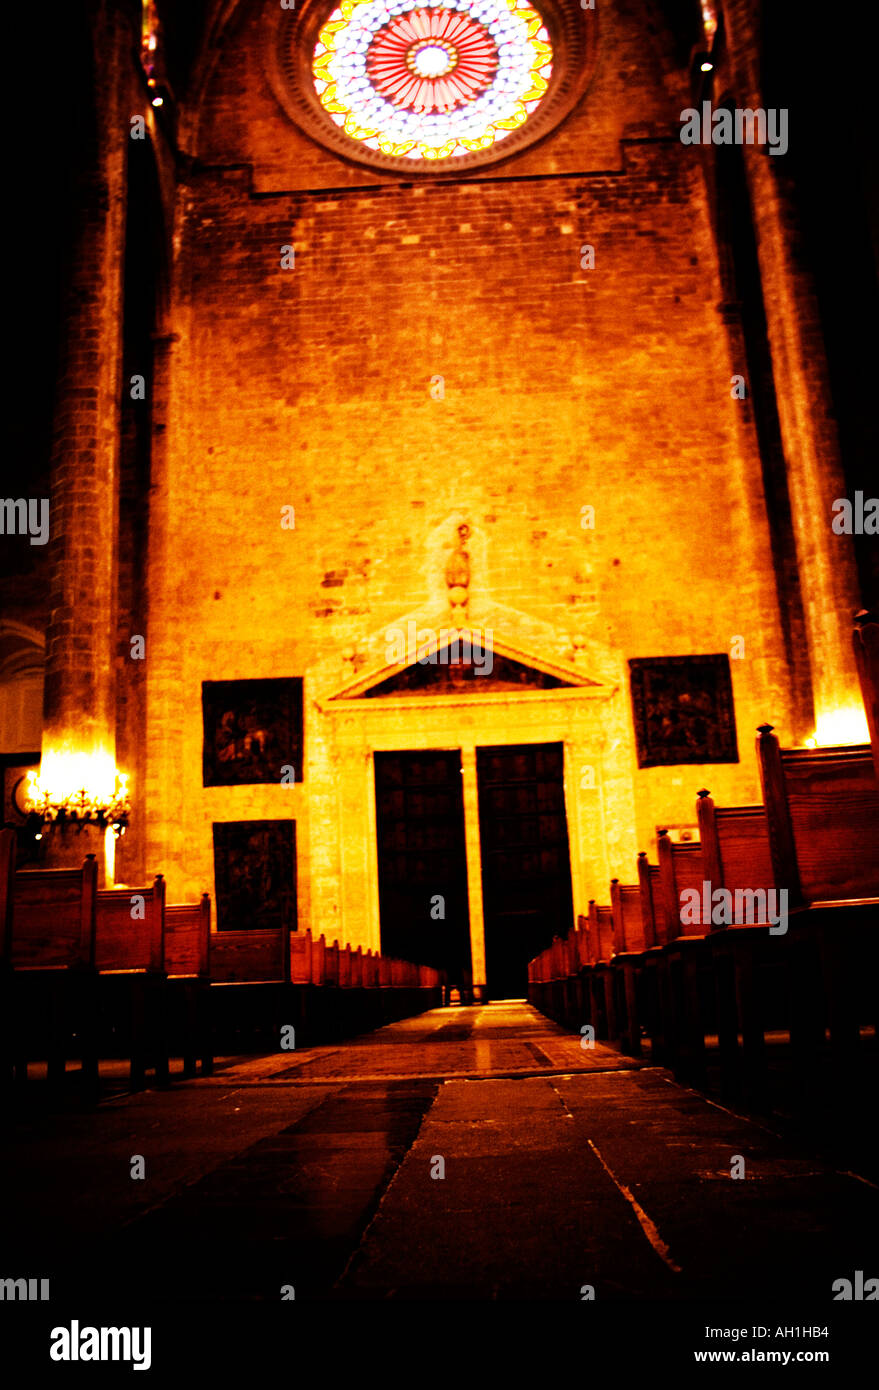 La cathédrale de Palma de Majorque Espagne Banque D'Images